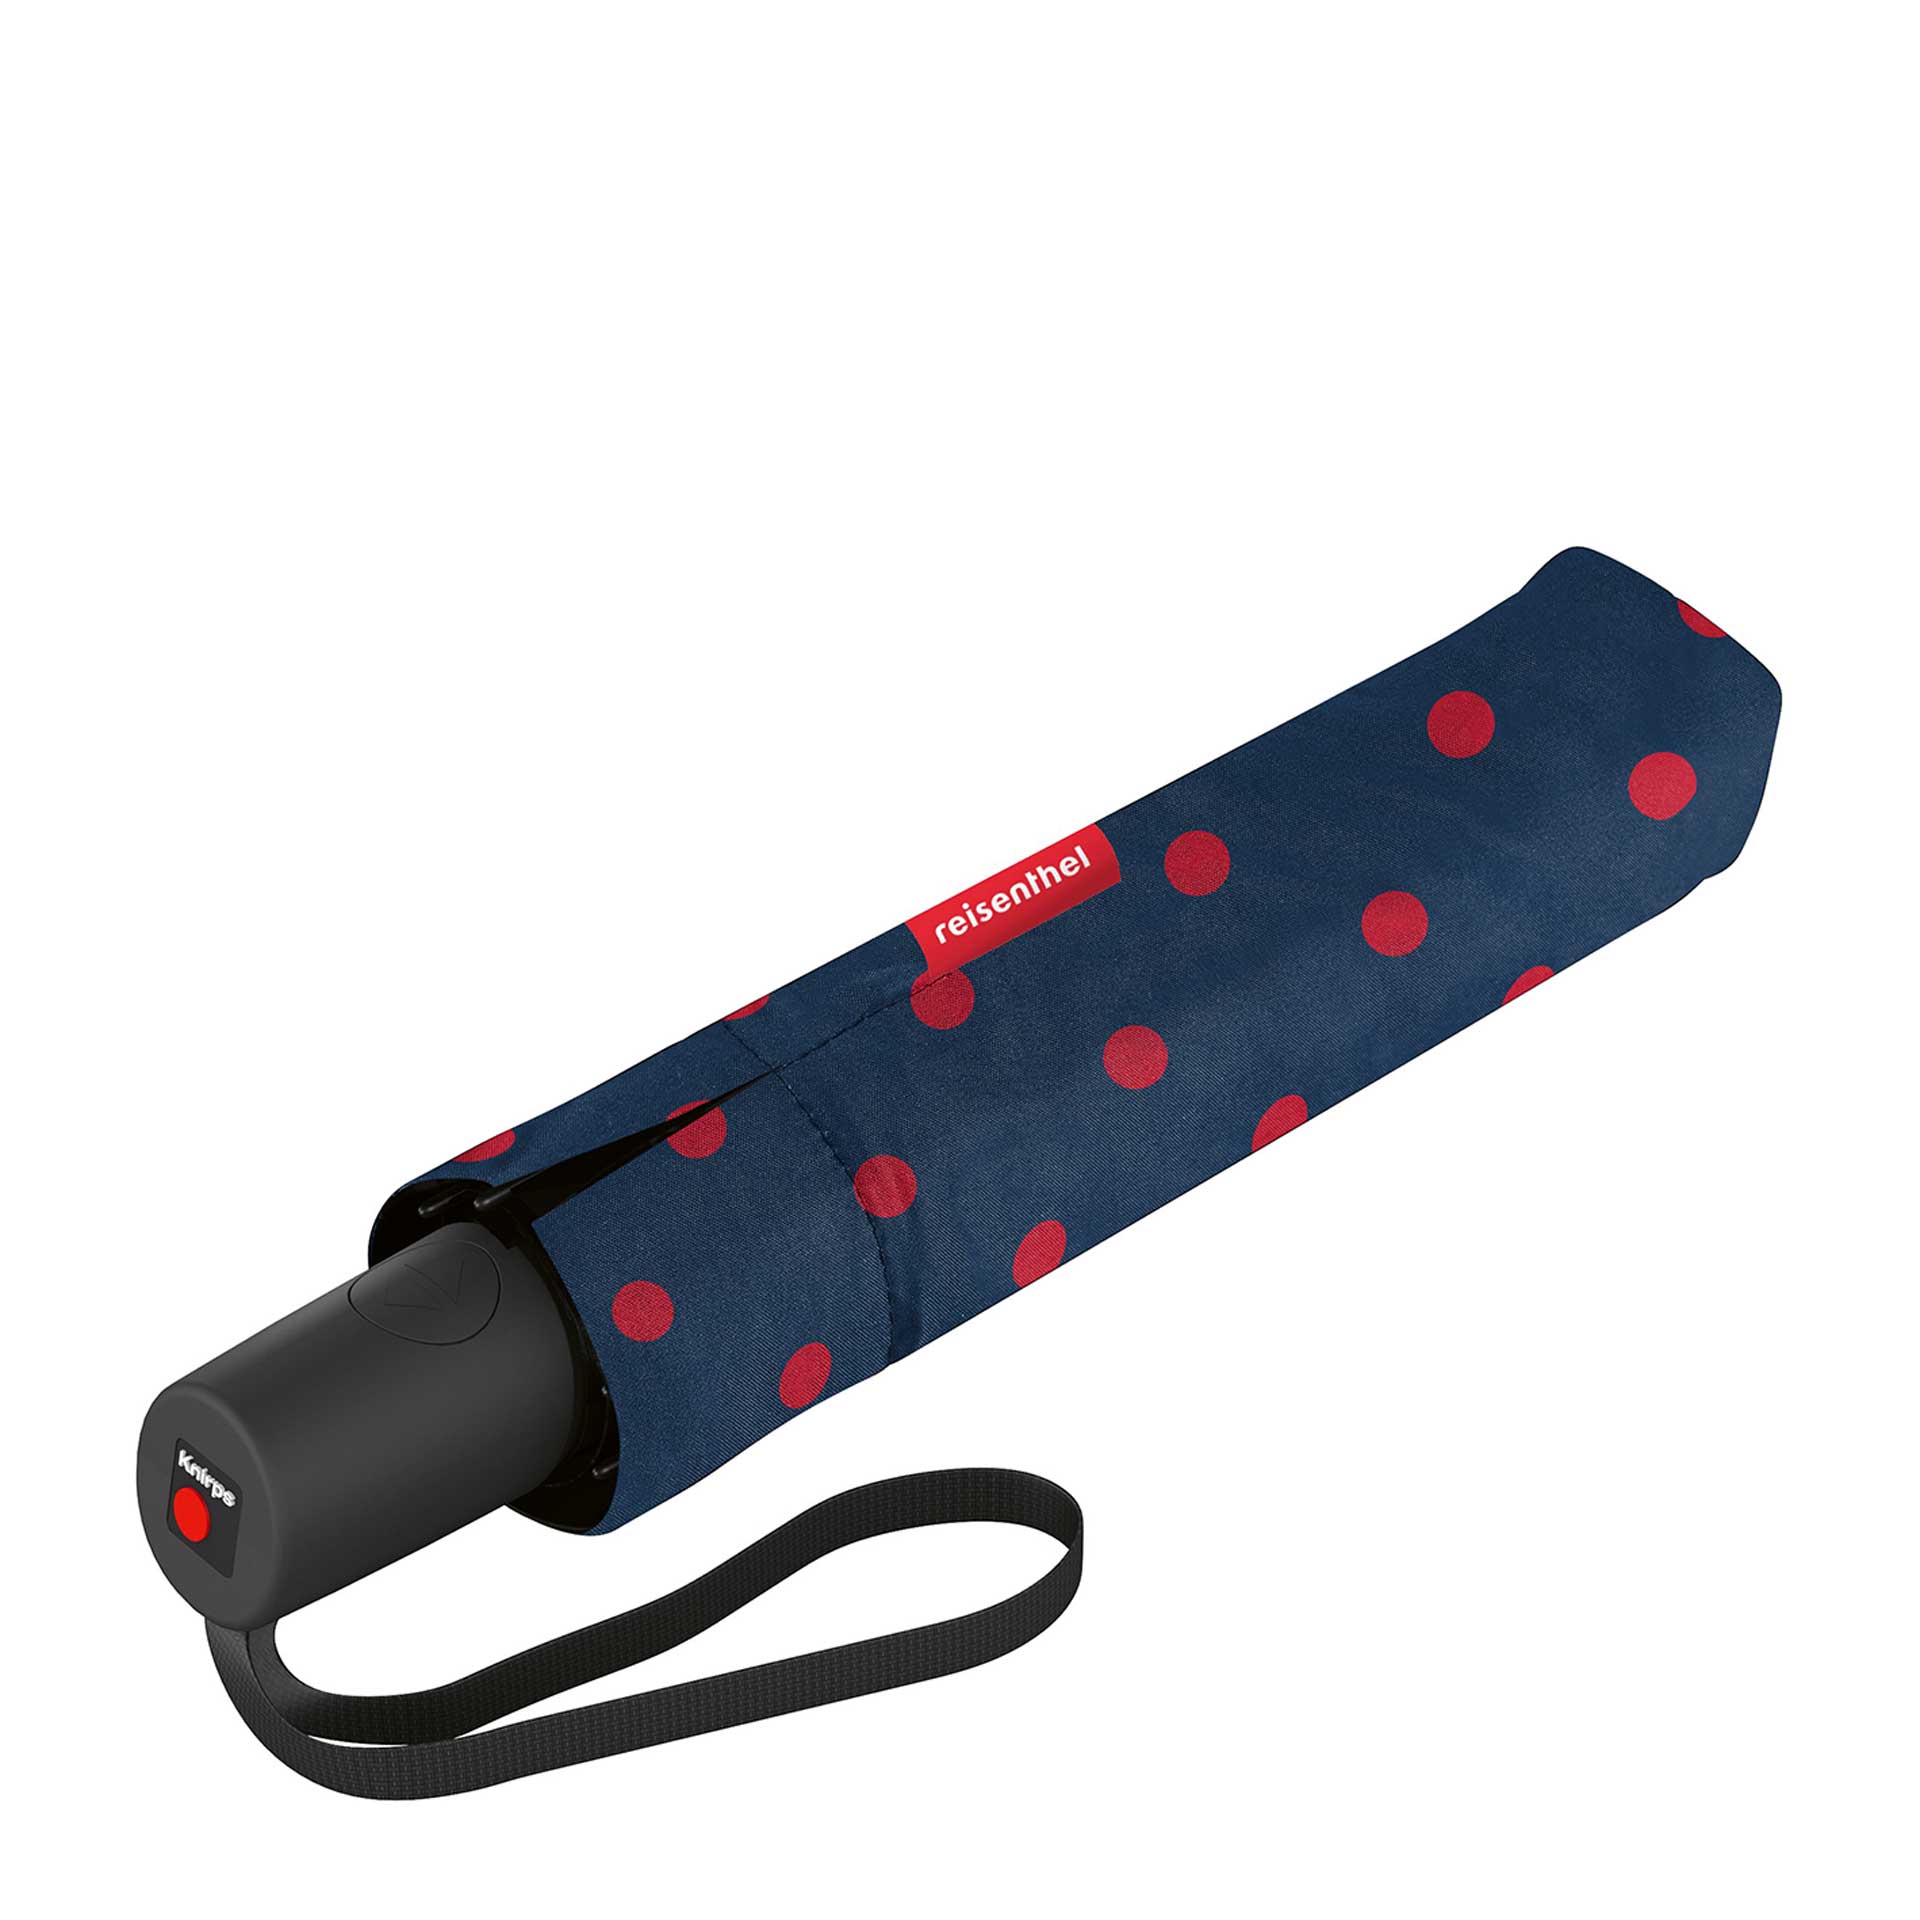 reisenthel Umbrella Pocket duomatic Regenschirm dots red